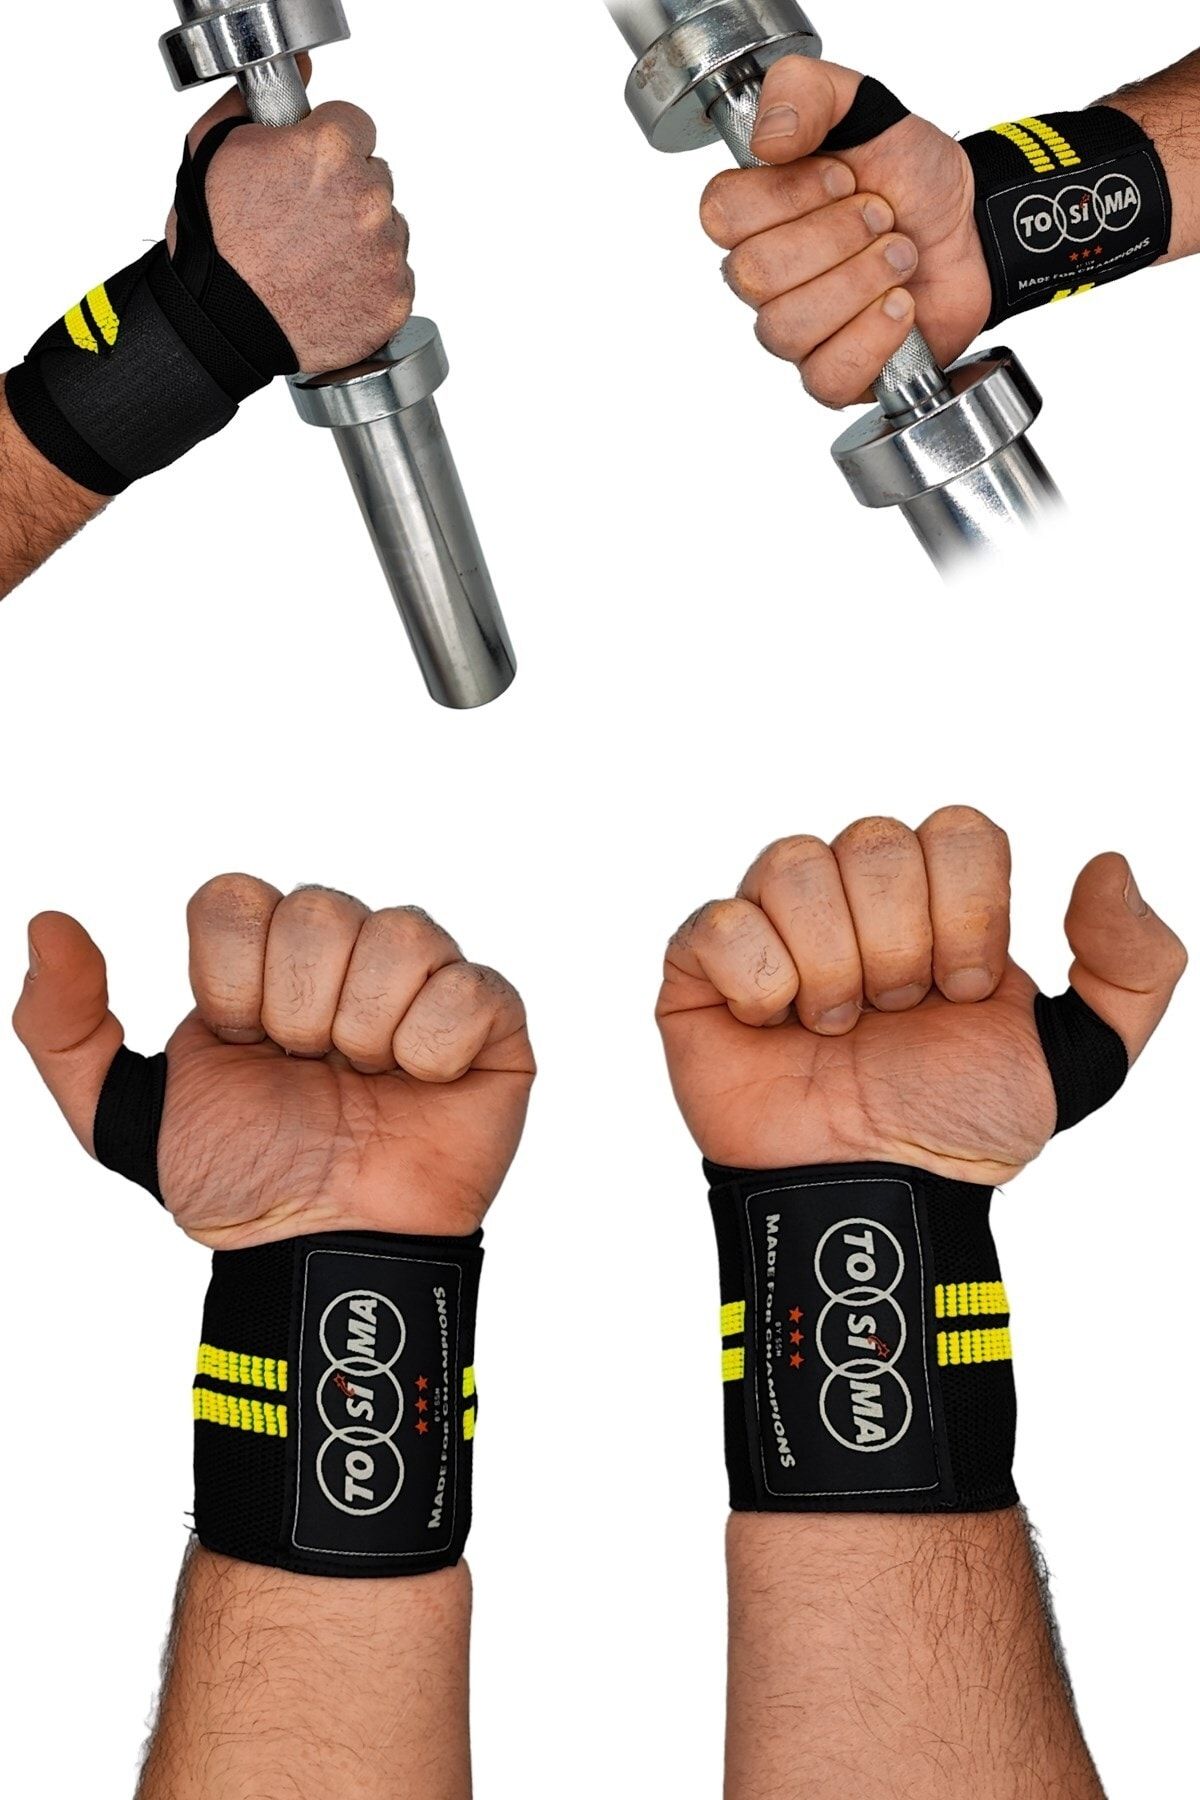 Tosima Parmaktan Geçmeli Fitness Bilekliği Bilek Koruyucu Wrist Wraps Wrist Support Fitness Bilekliği